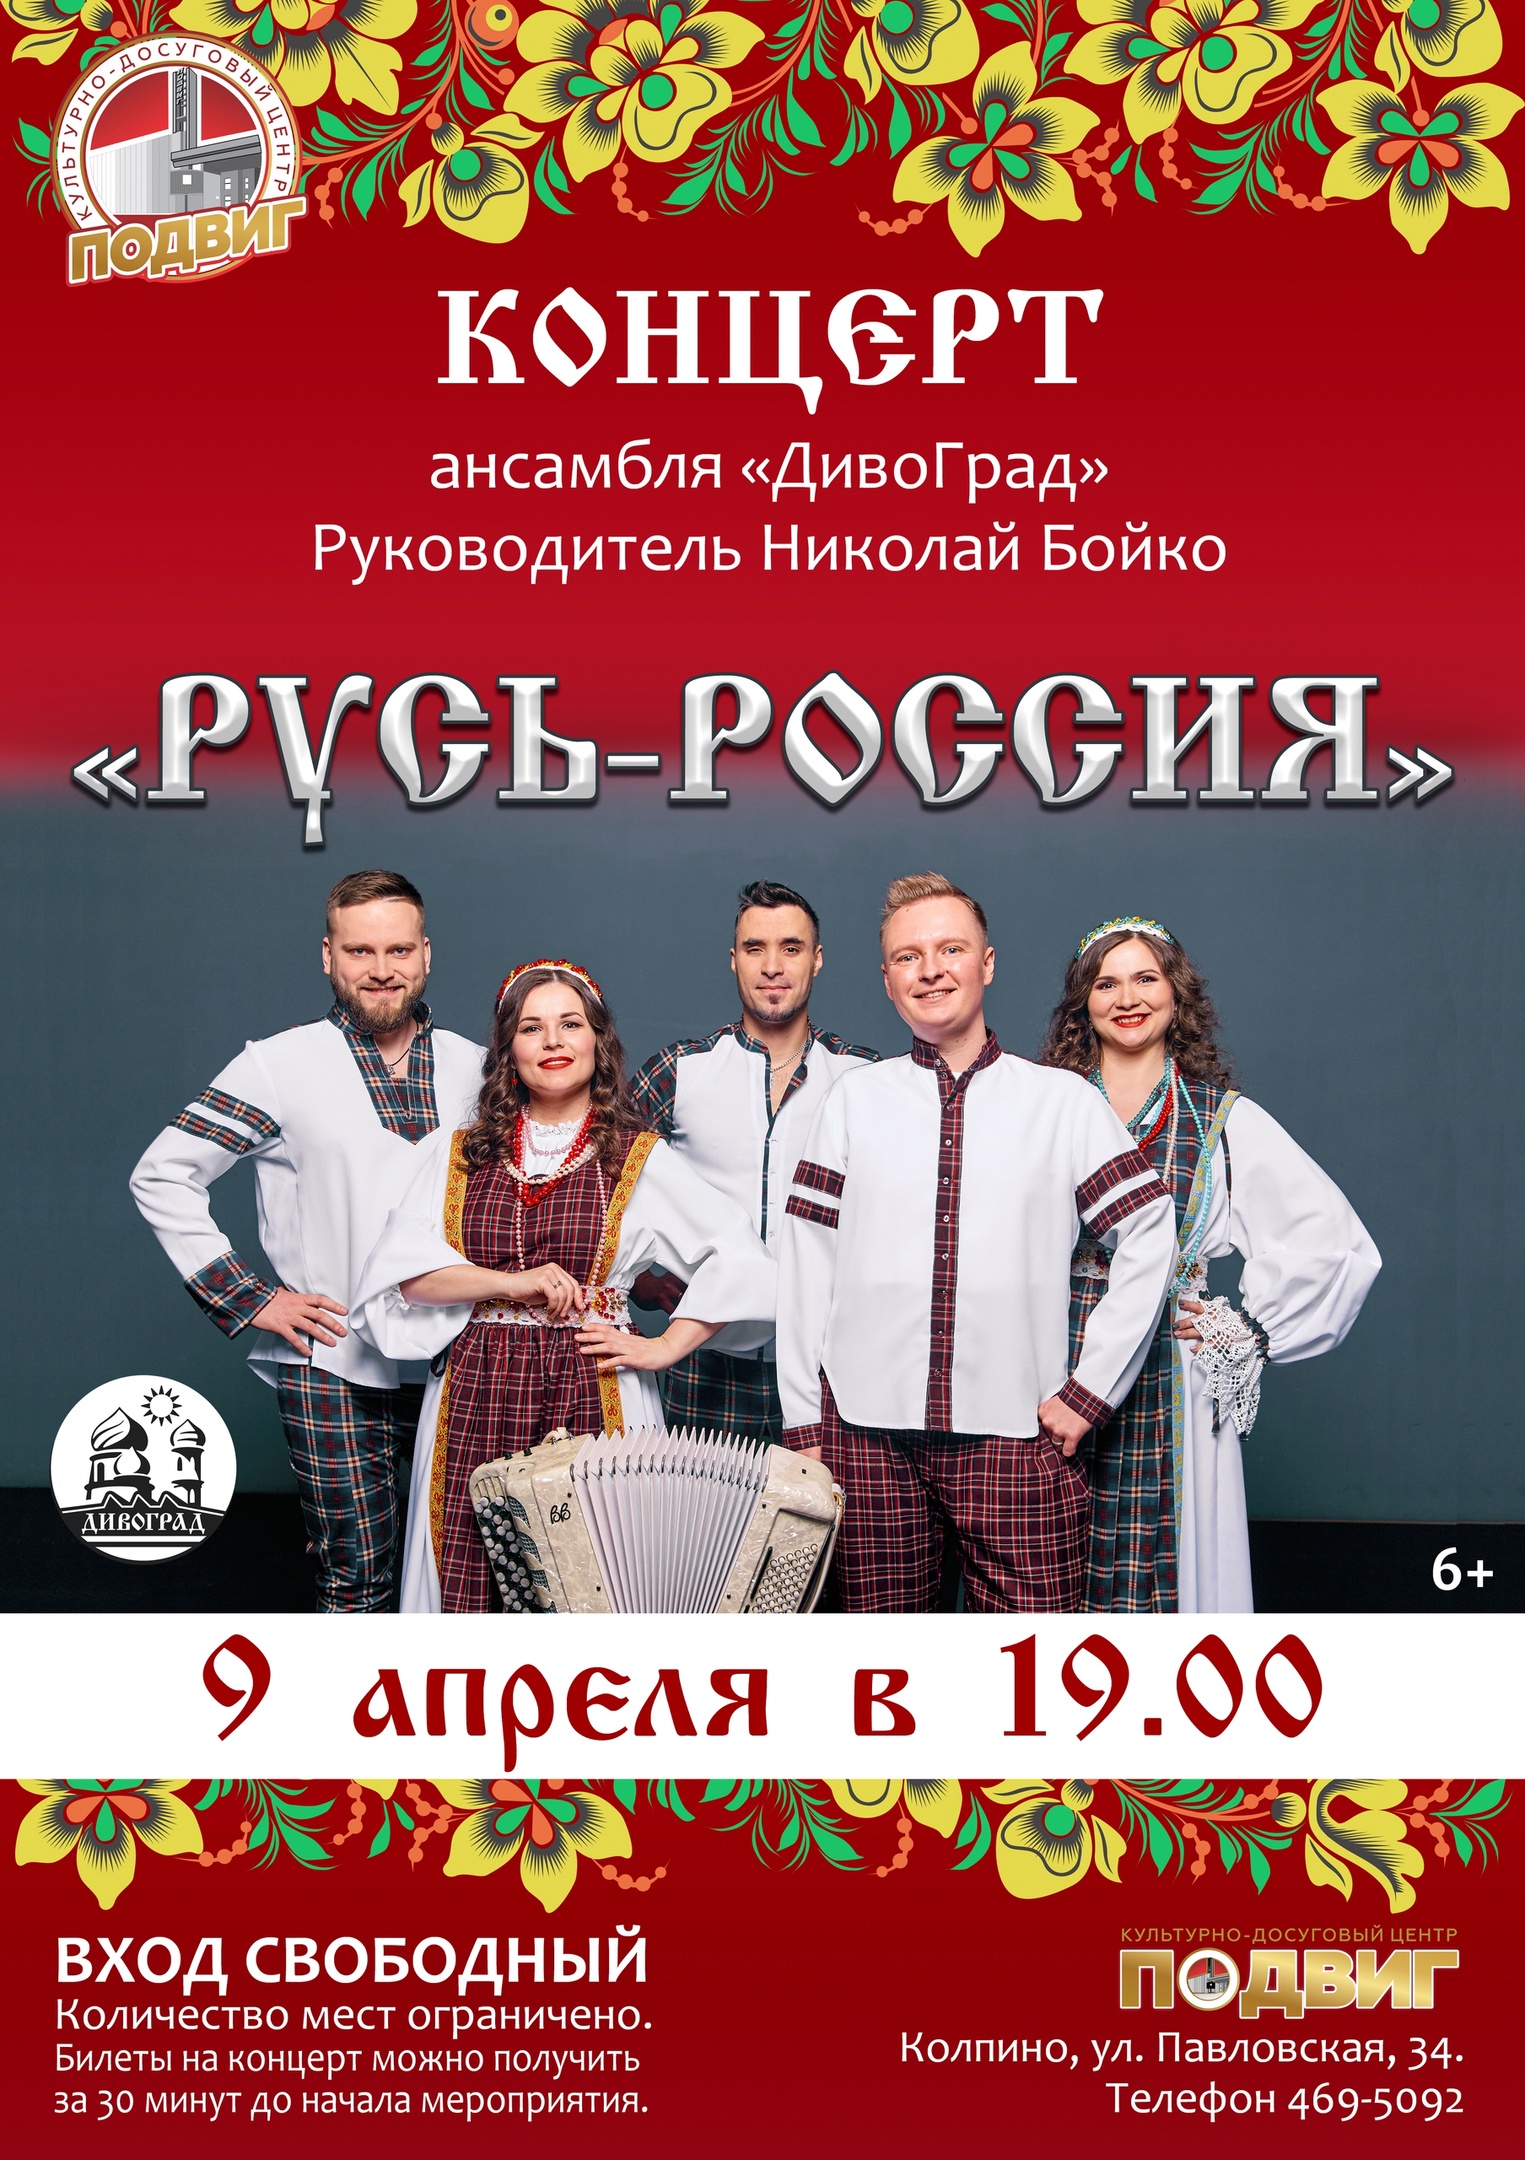 Культурно-досуговый центр «Подвиг» приглашает на концерт ансамбля «ДивоГрад»!